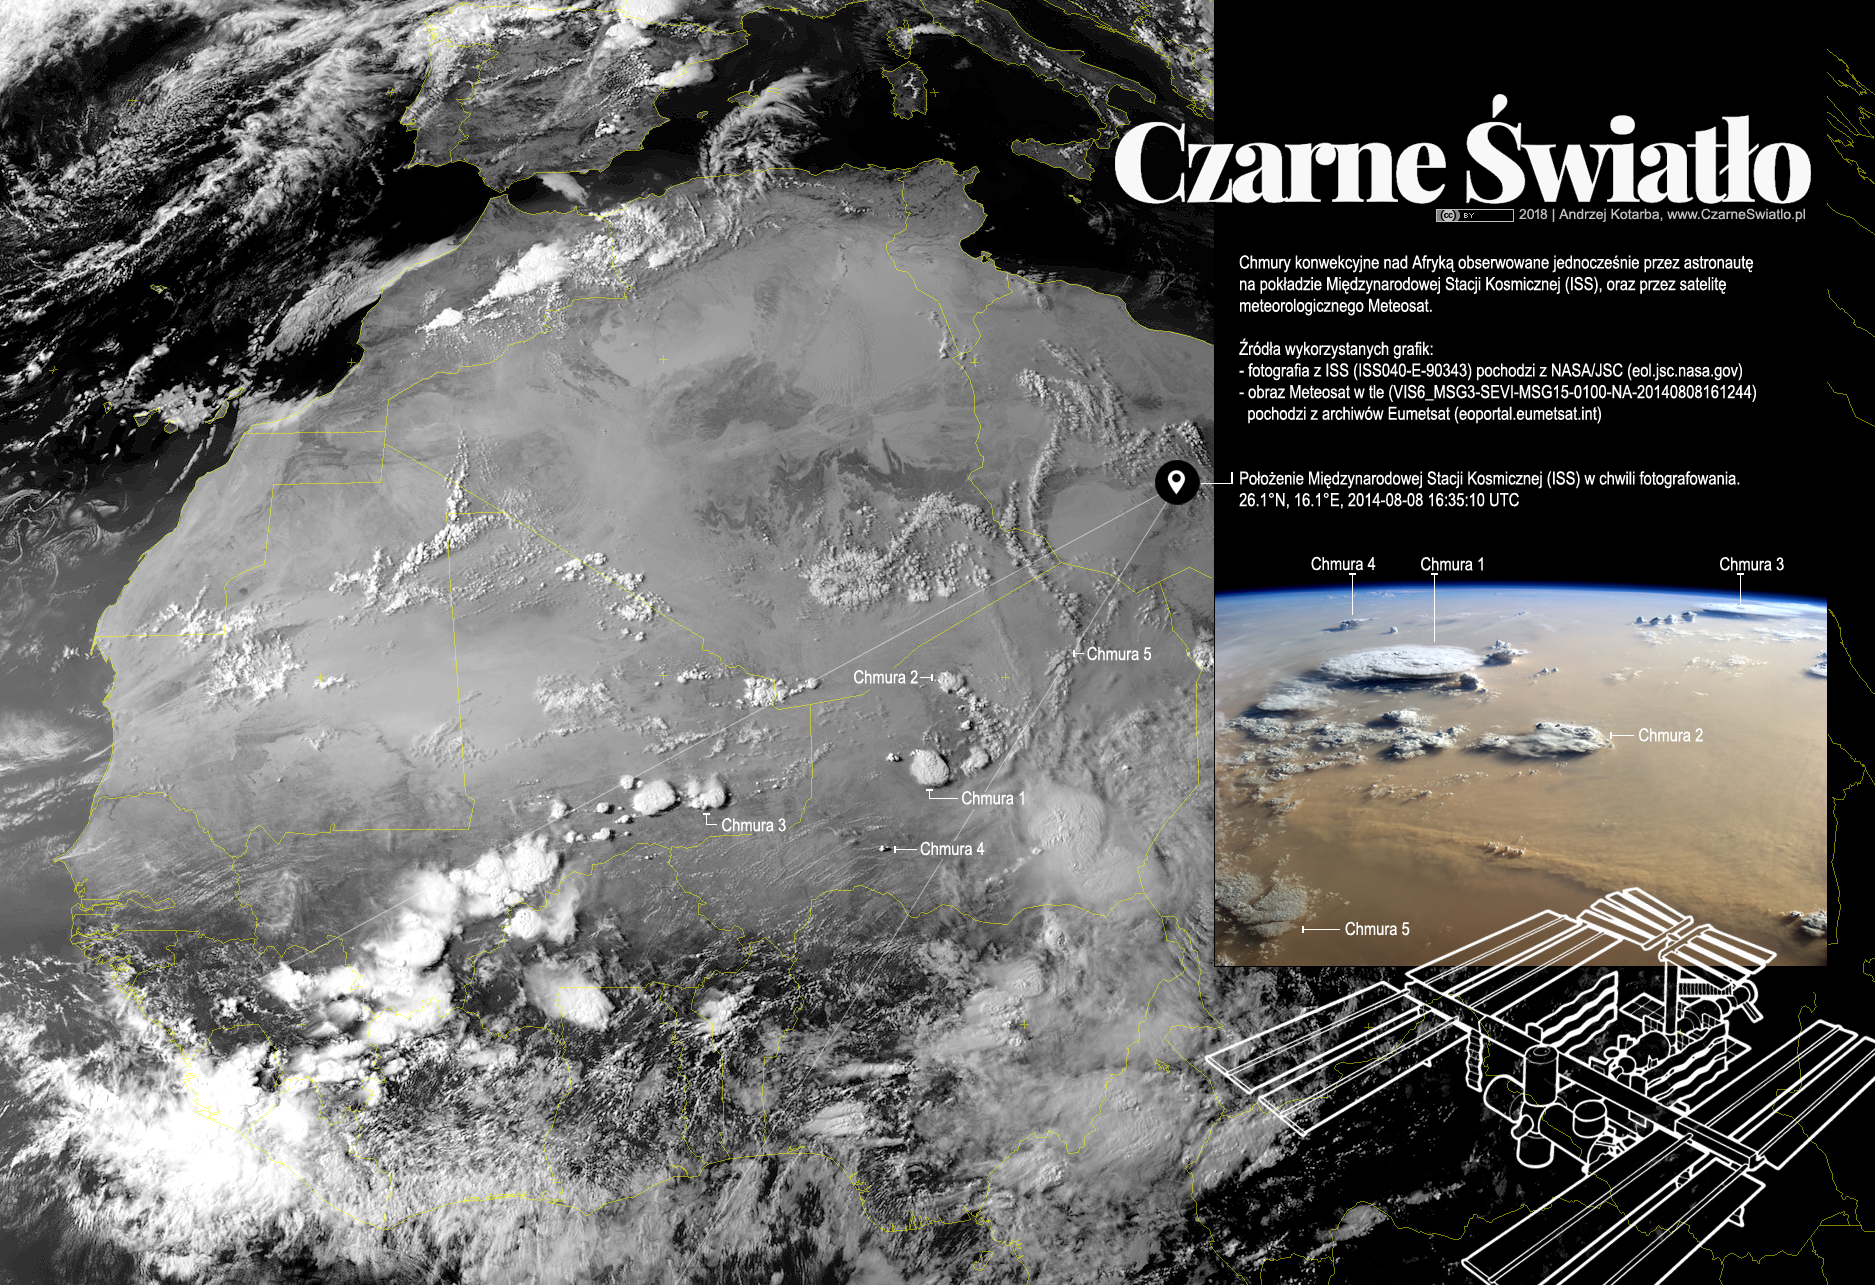 Burze nad Sahelem widziane jednocześnie przez astronautę na stacji kosmicznej, oraz satelitę meteorologicznego Meteosat. Rys. Andrzej Kotarba/czarneswiatlo.pl/Meteosat/NASA.